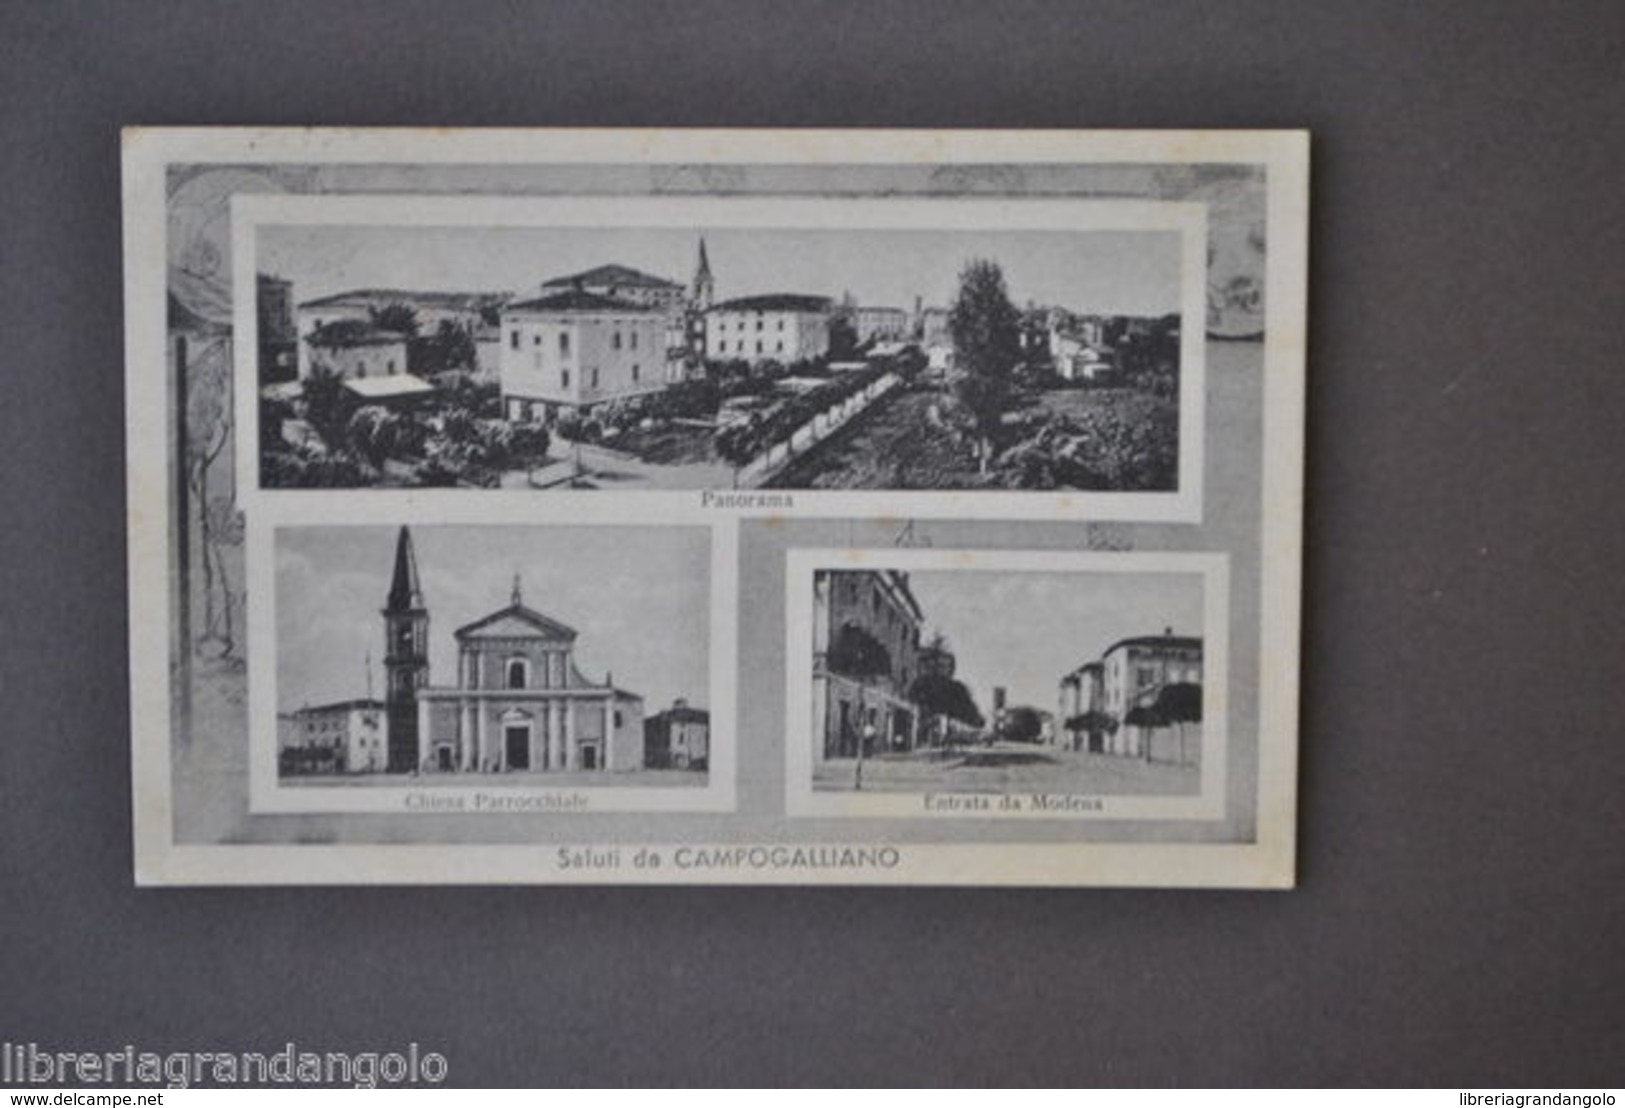 Cartoline Campogalliano Modena Panorama Chiesa Parrocchiale 1942 - Modena